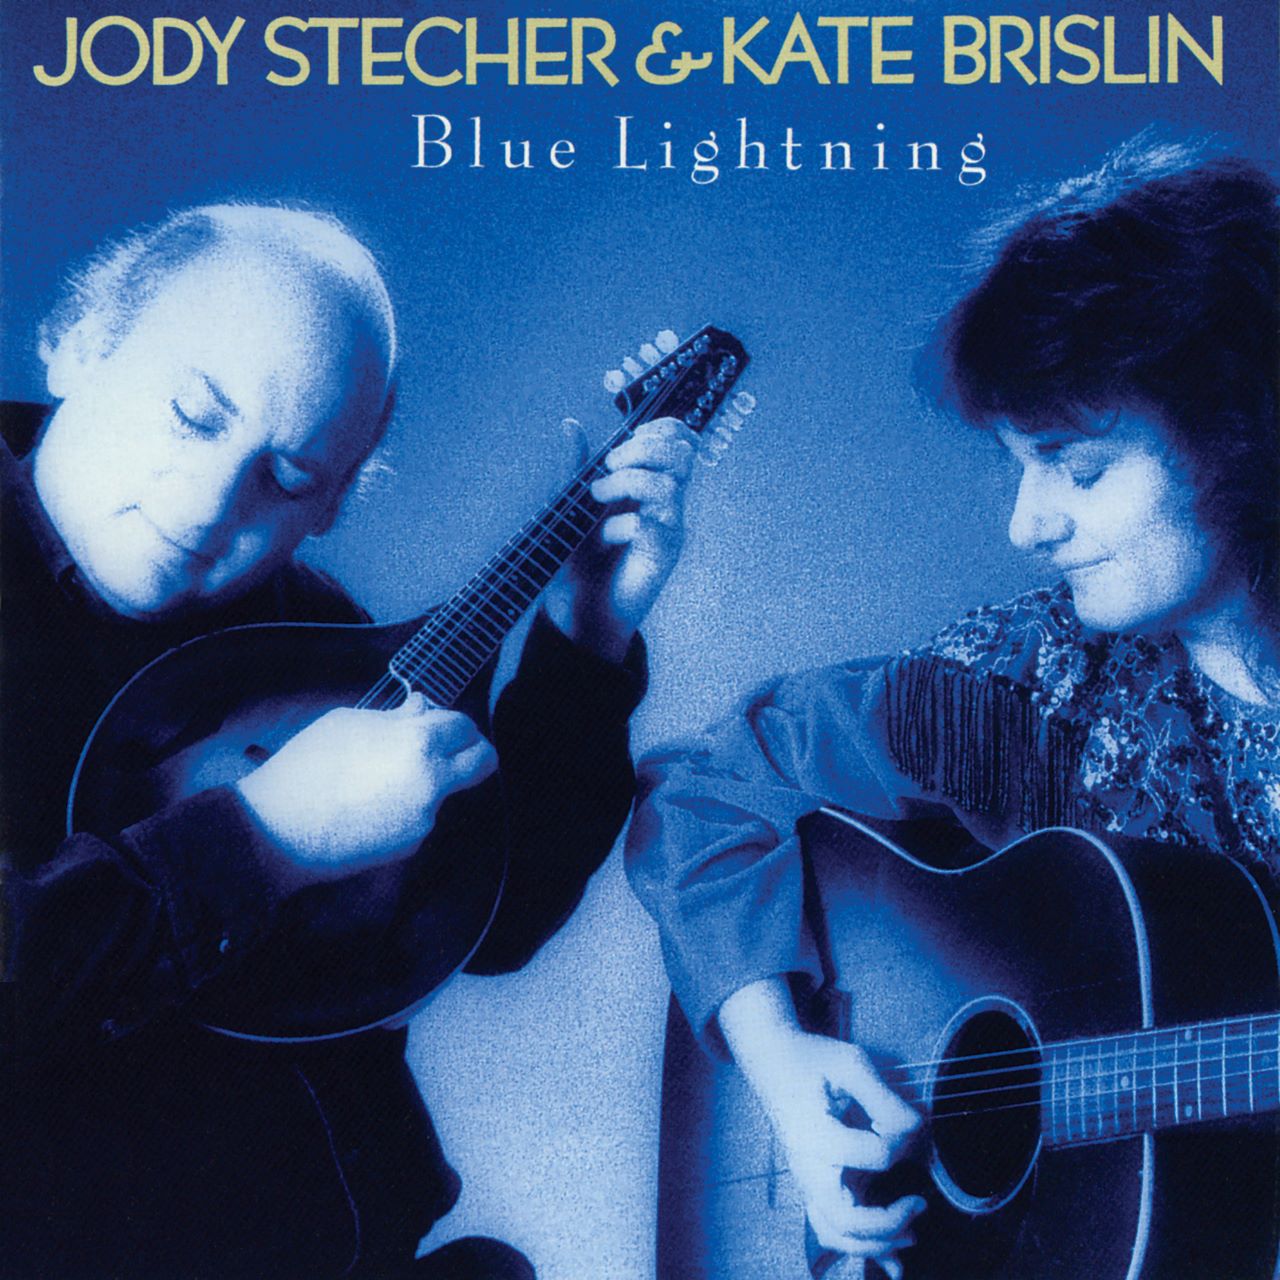 Jody Stecher & Kate Brislin - Blue Lightning cover album